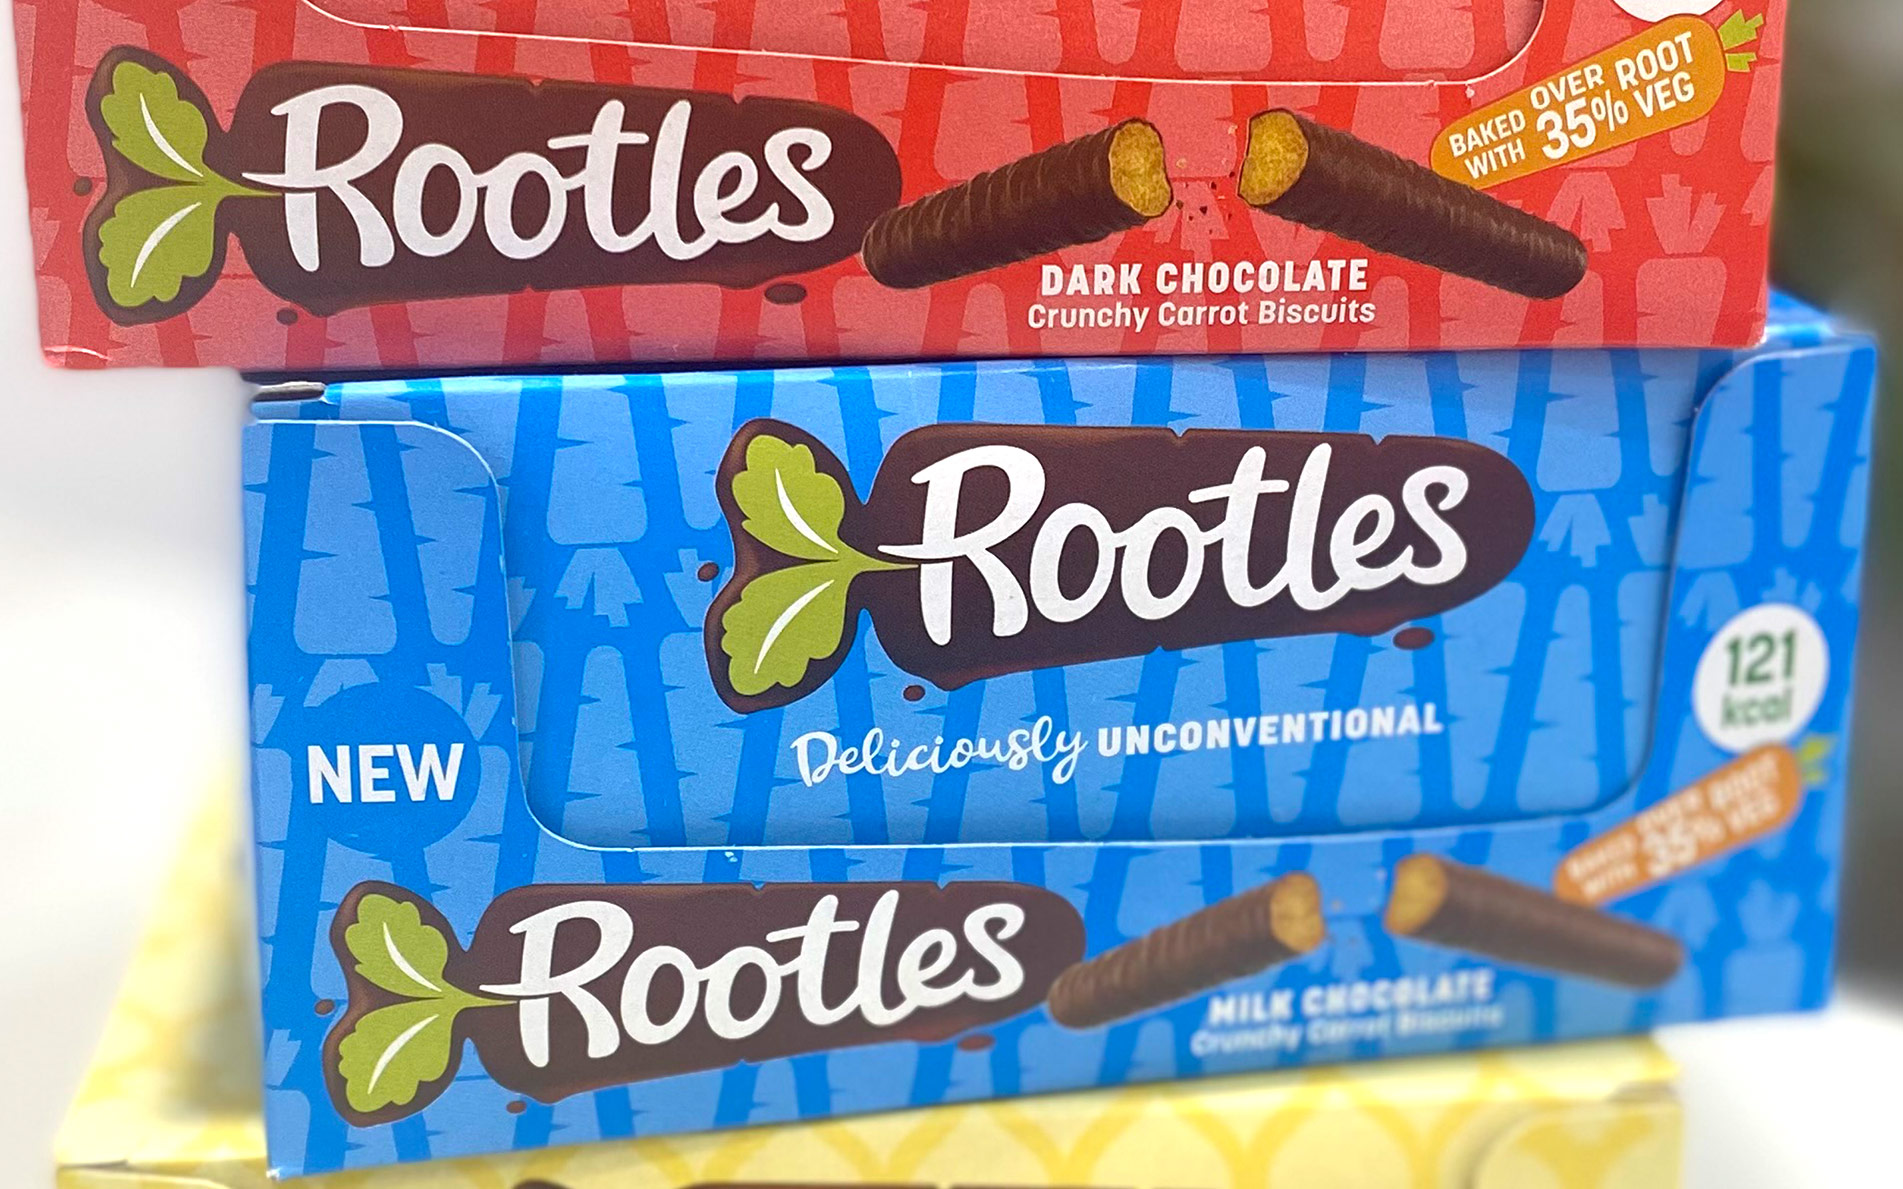 Rootles packaging branding - Rylands Brand Design